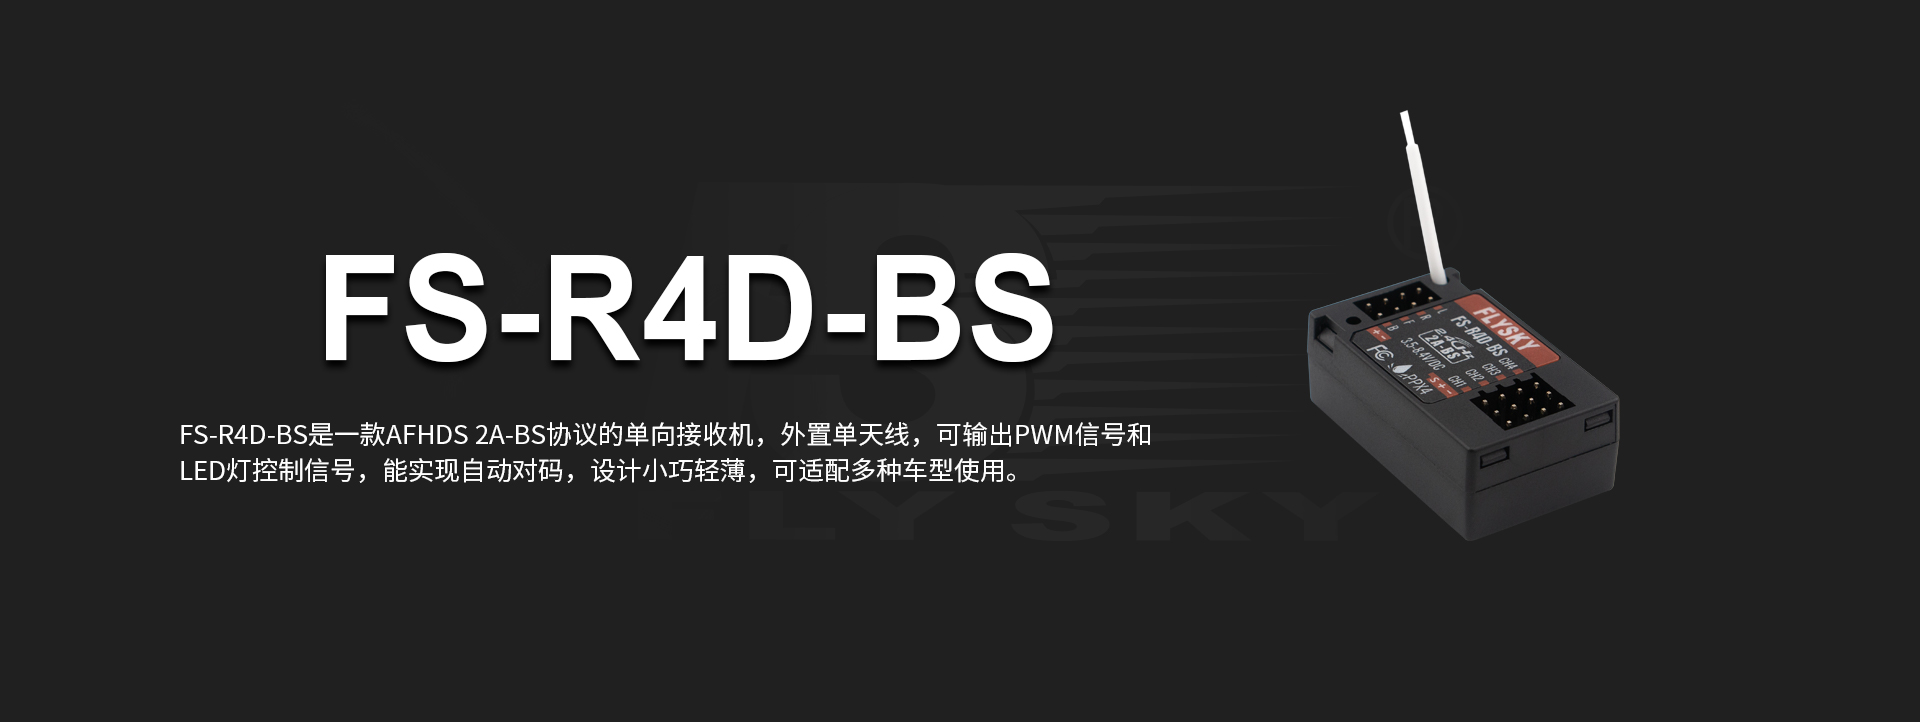 FS-R4D-BS